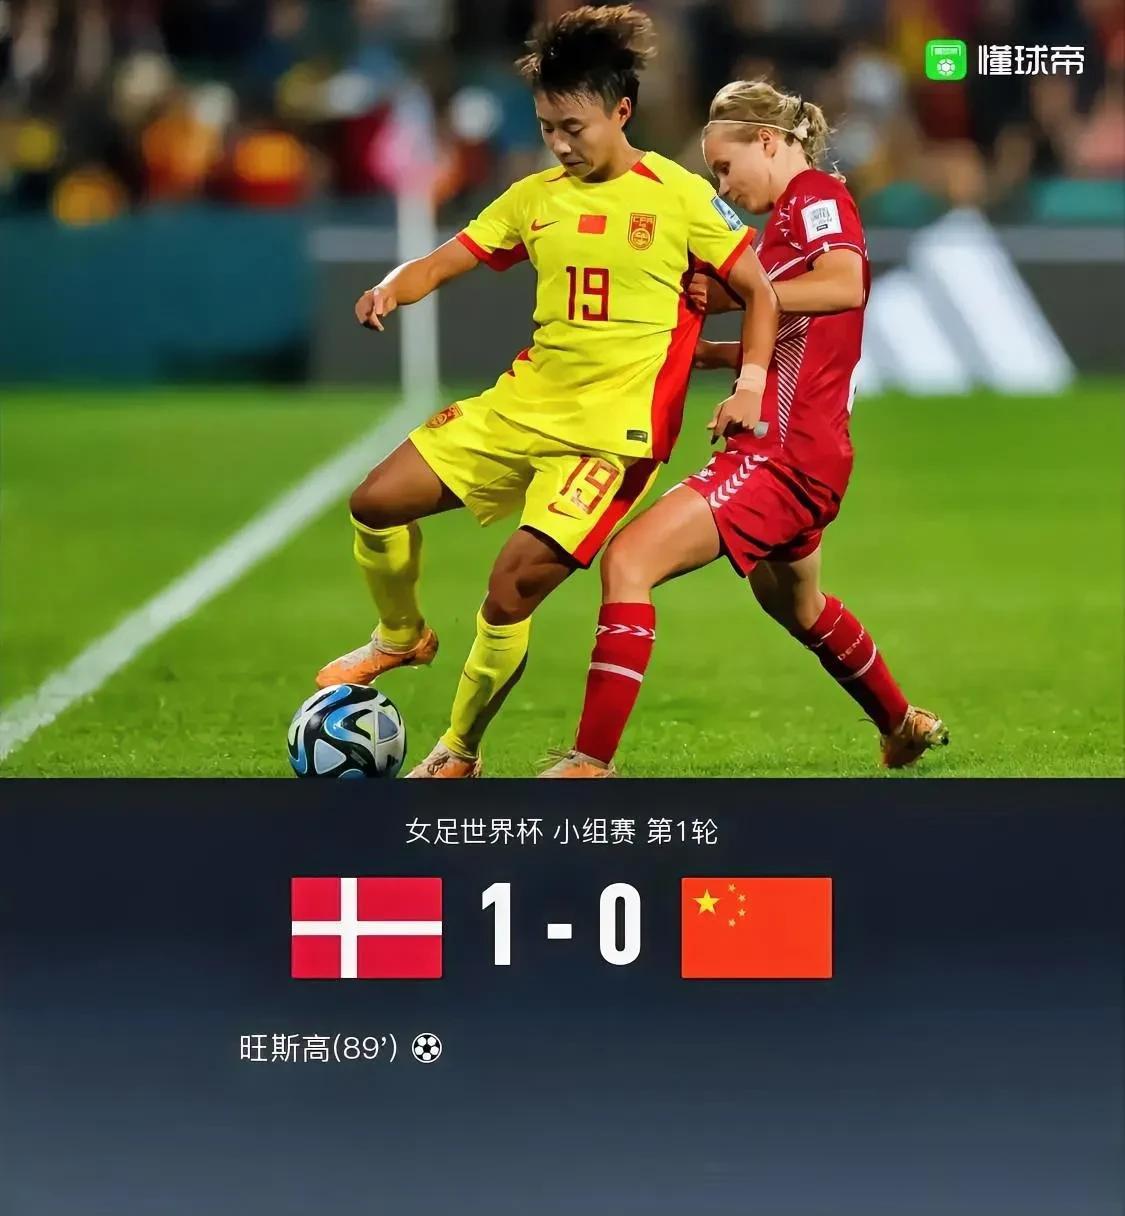 丹麦队1-0中国队，
英格兰队1-0海地队。

丹麦和英格兰各得3分，中国队和海